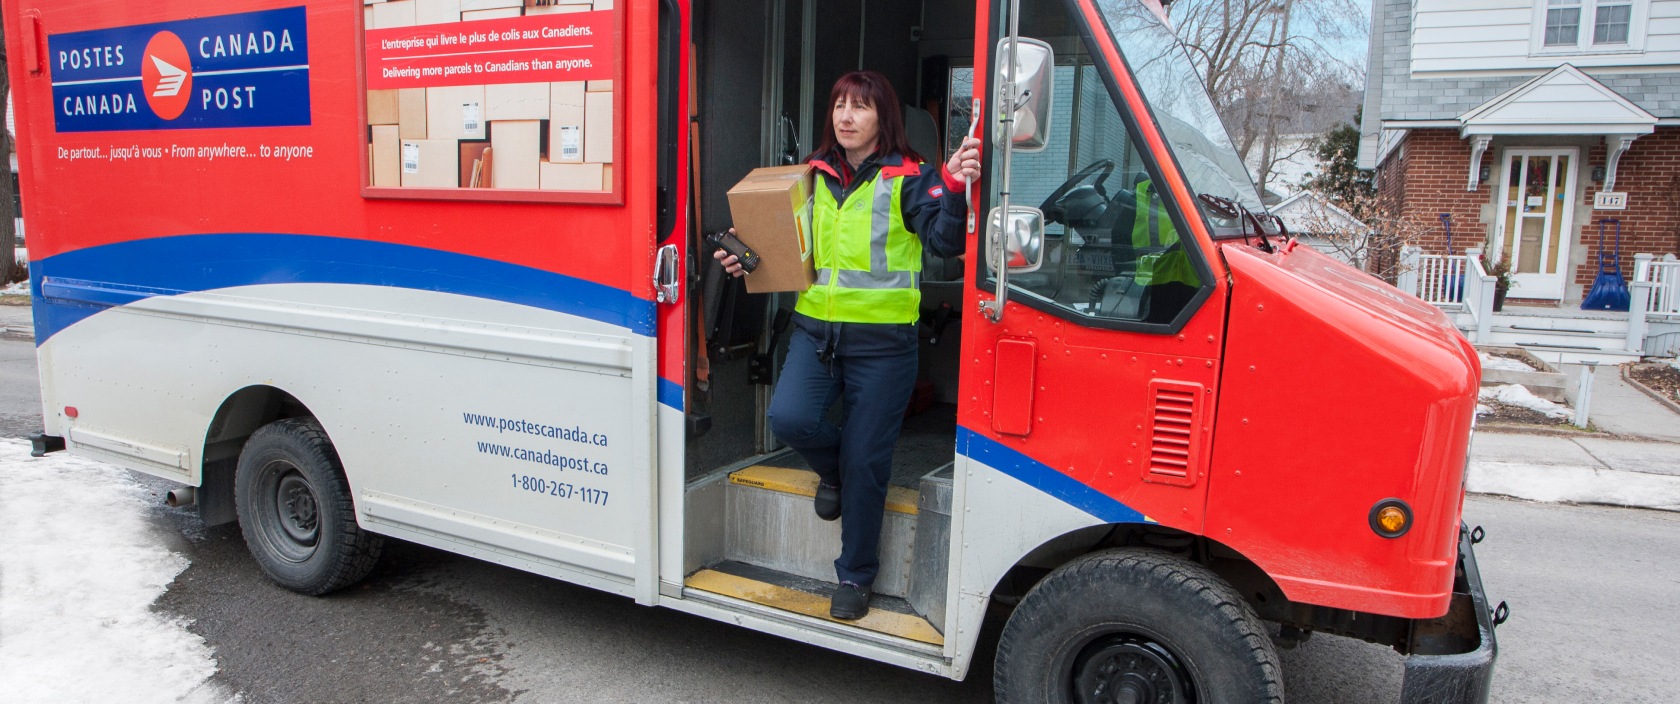 Agente de livraison sortant d’un camion de Postes Canada dansun quartier résidentiel pour livrer un colis